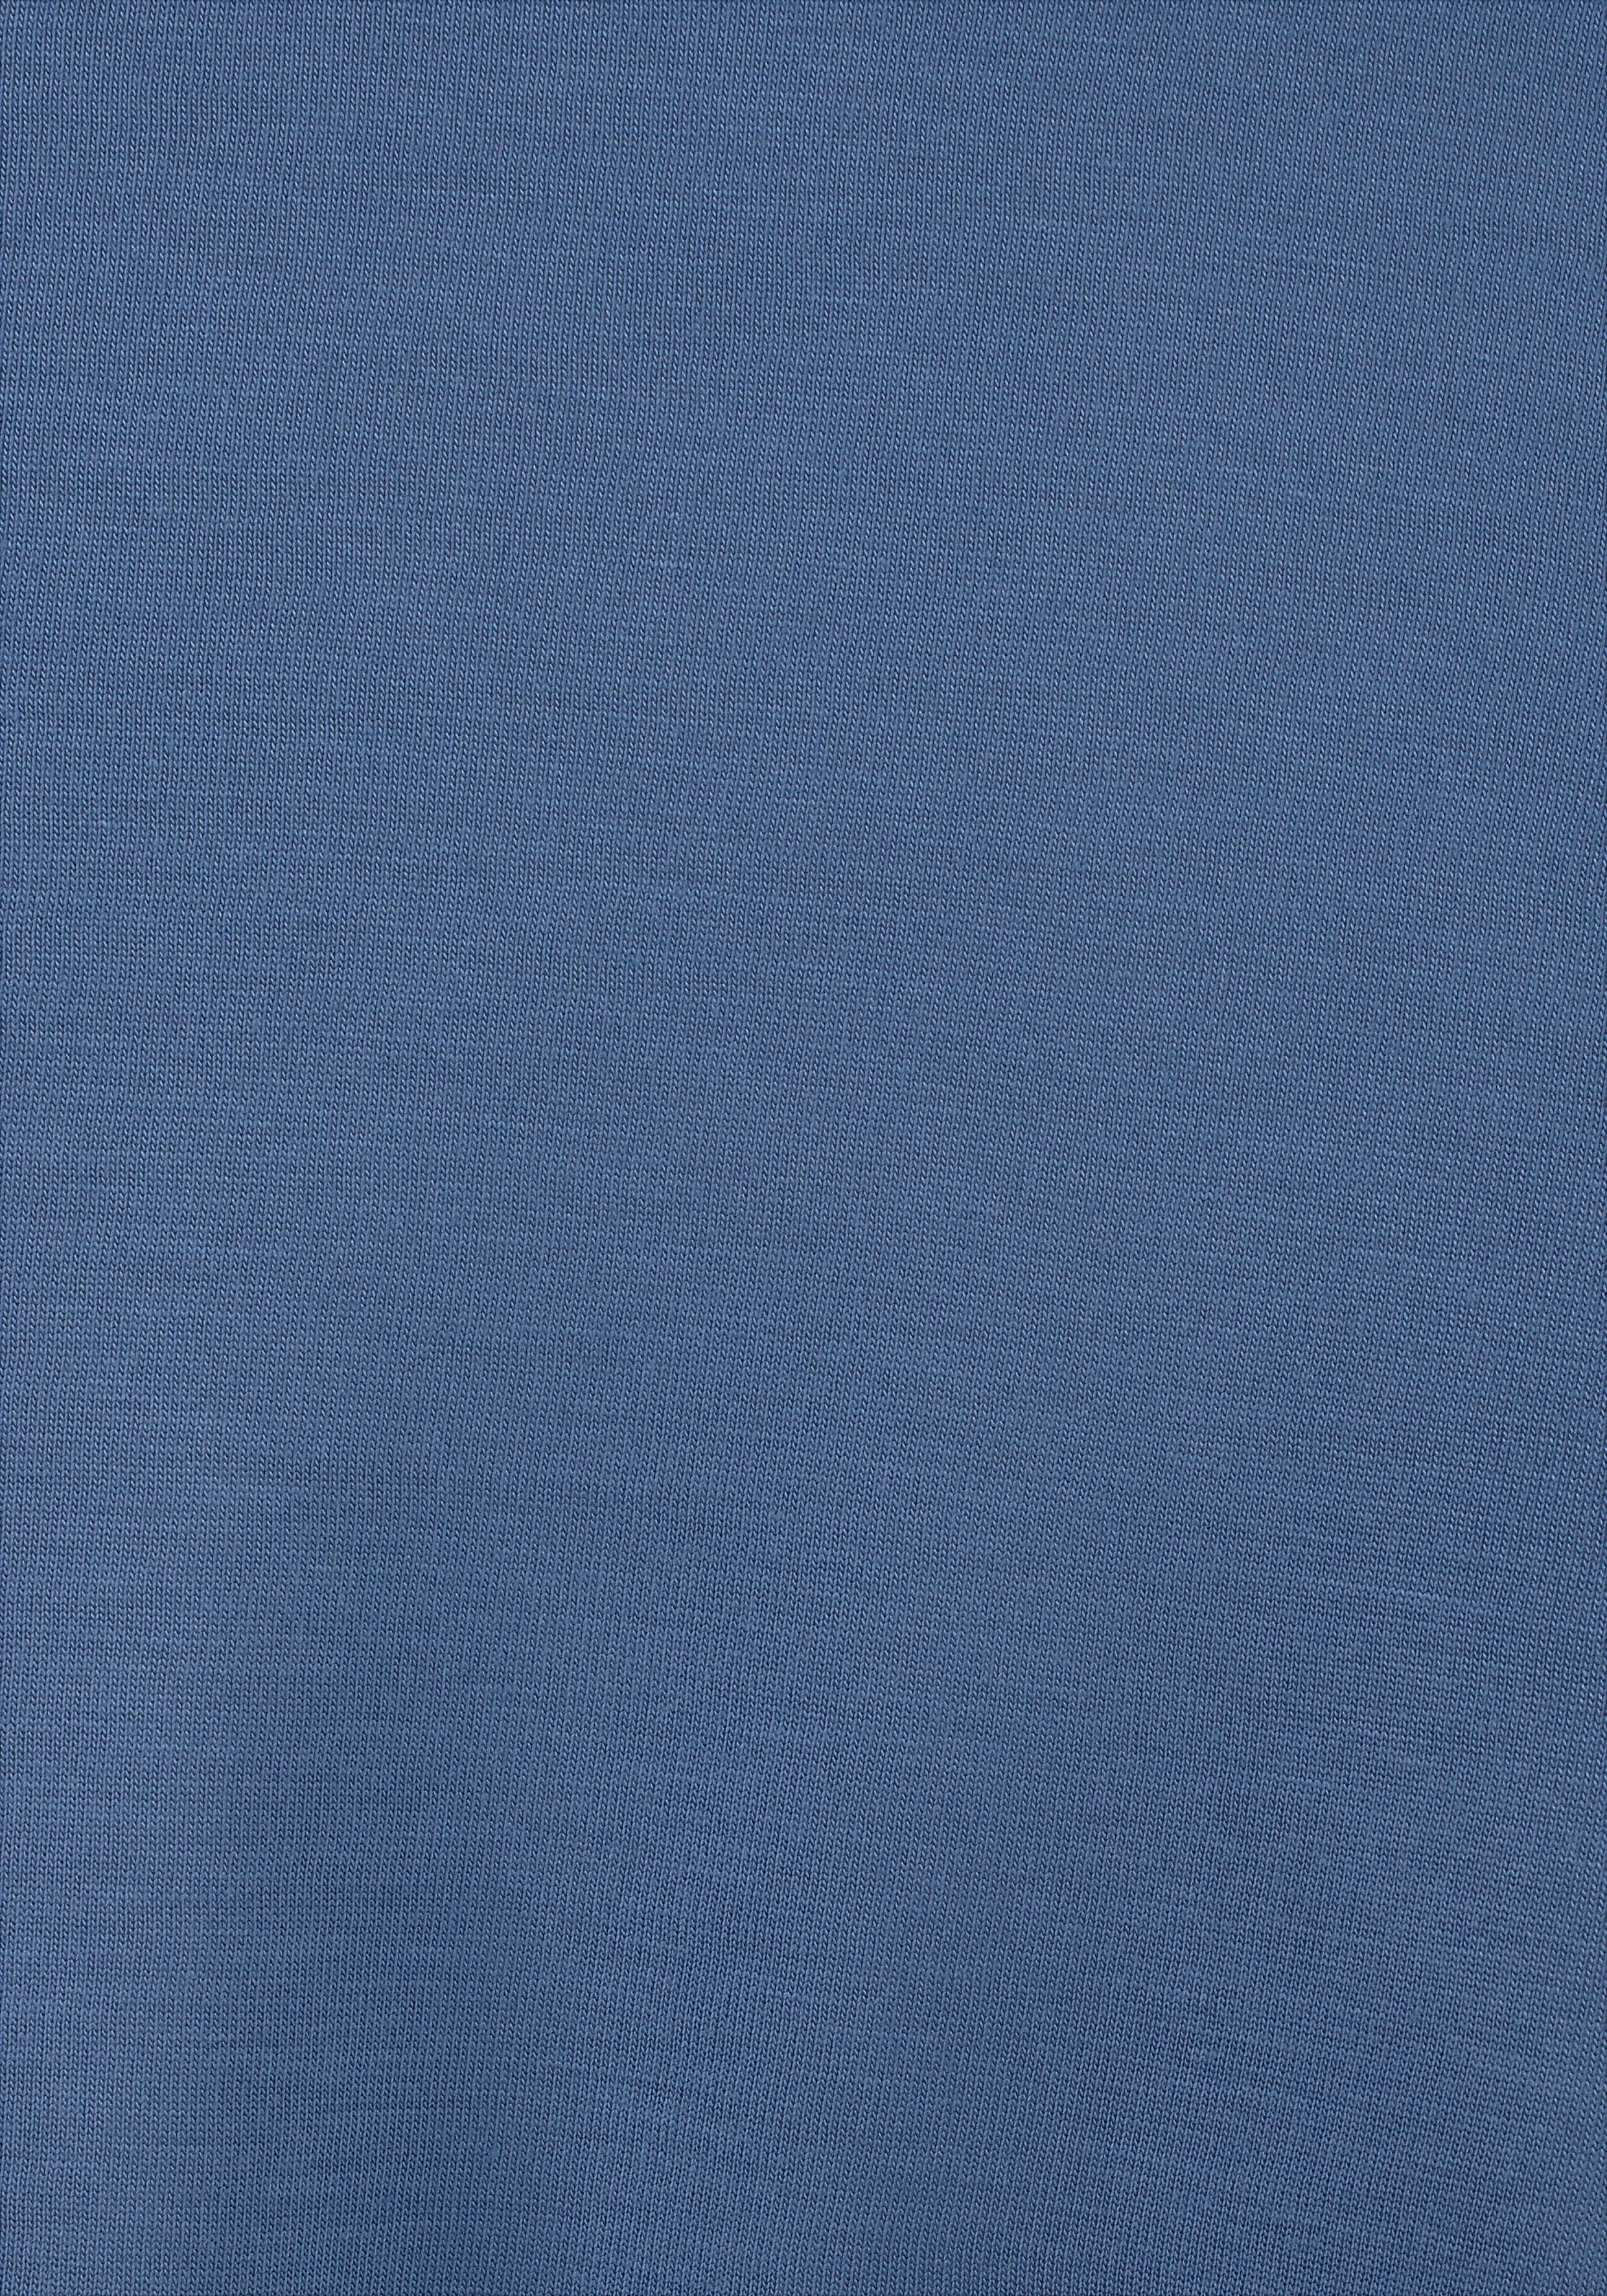 weiß-türkis-blau Viskosejersey aus Strandkleid Beachtime